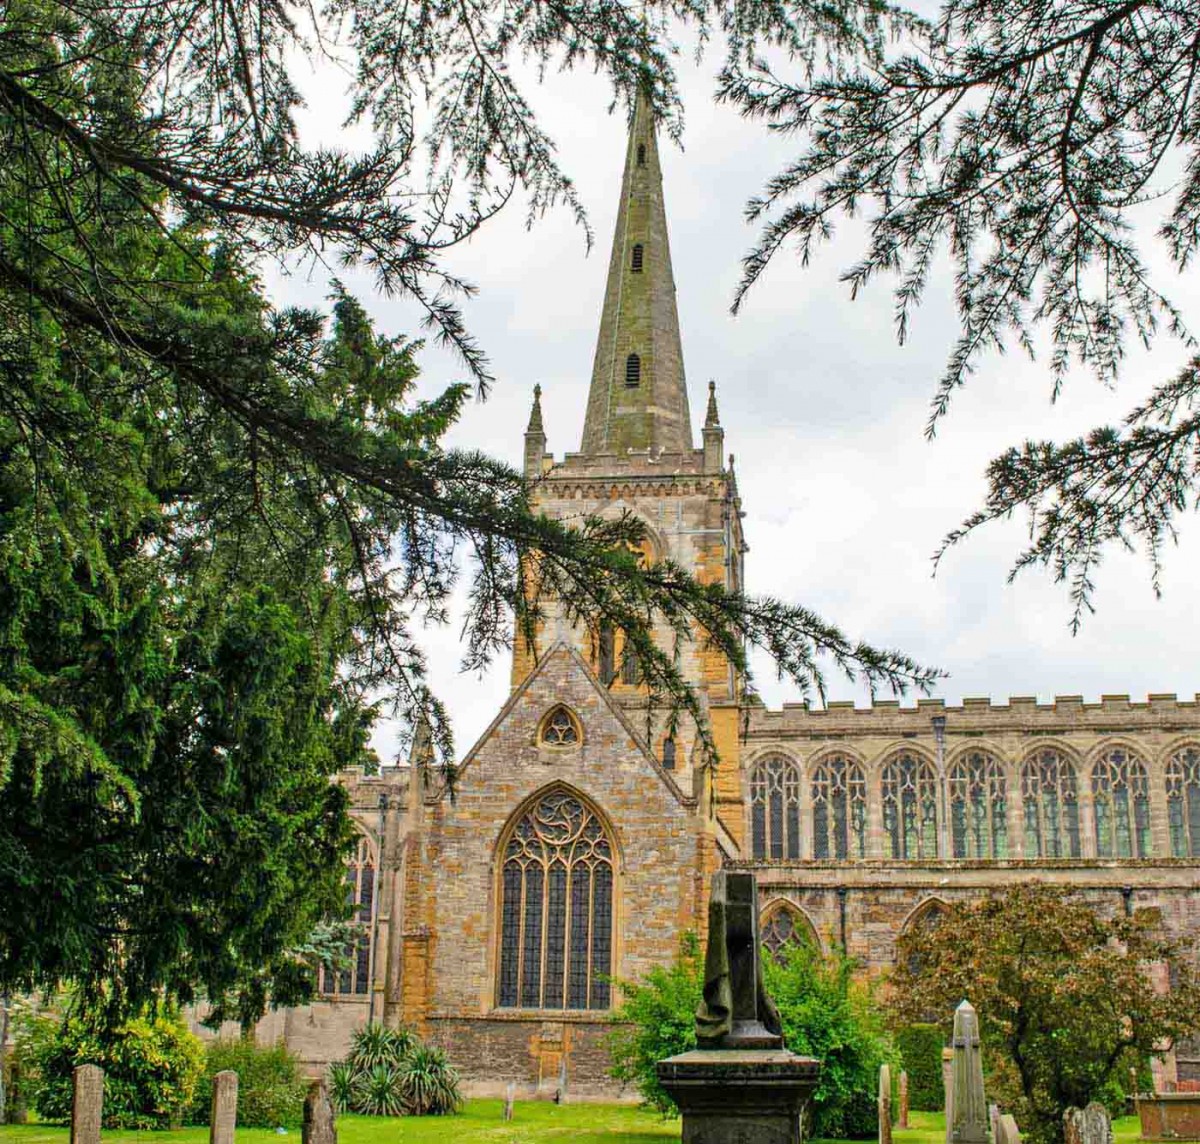 Holy Trinity Church in Stratford-upon-Avon